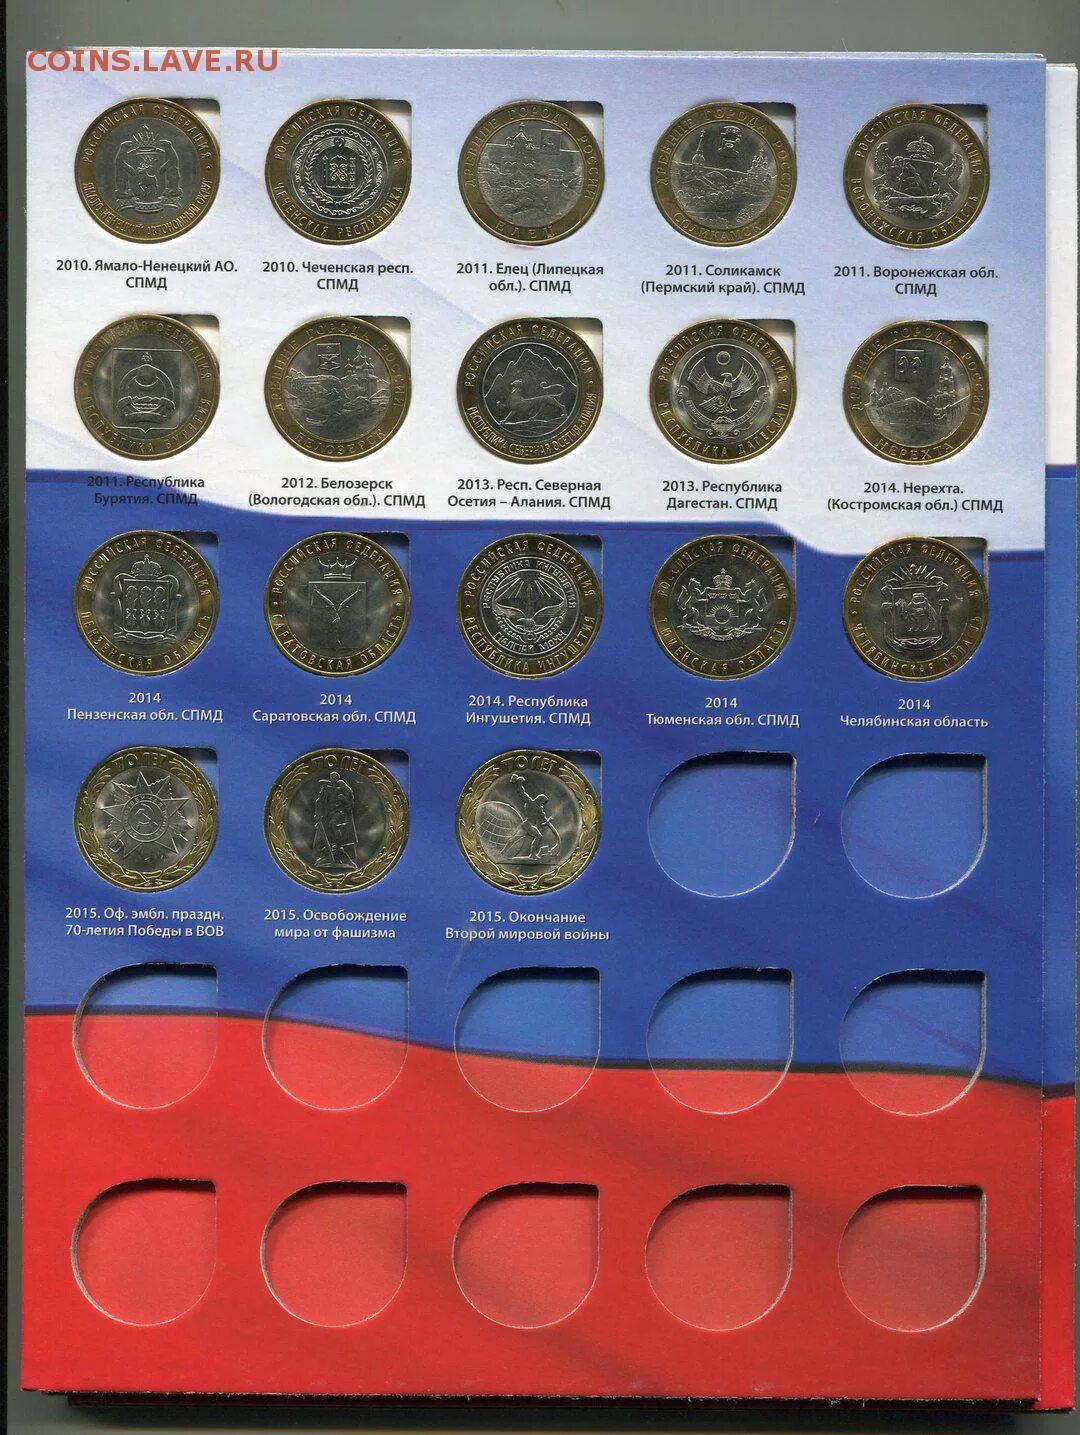 10 Рублей Биметалл полный набор. Полный набор молодая Россия монеты. Каталог монет 10 рублей Биметалл по годам таблица. Вес монет России.